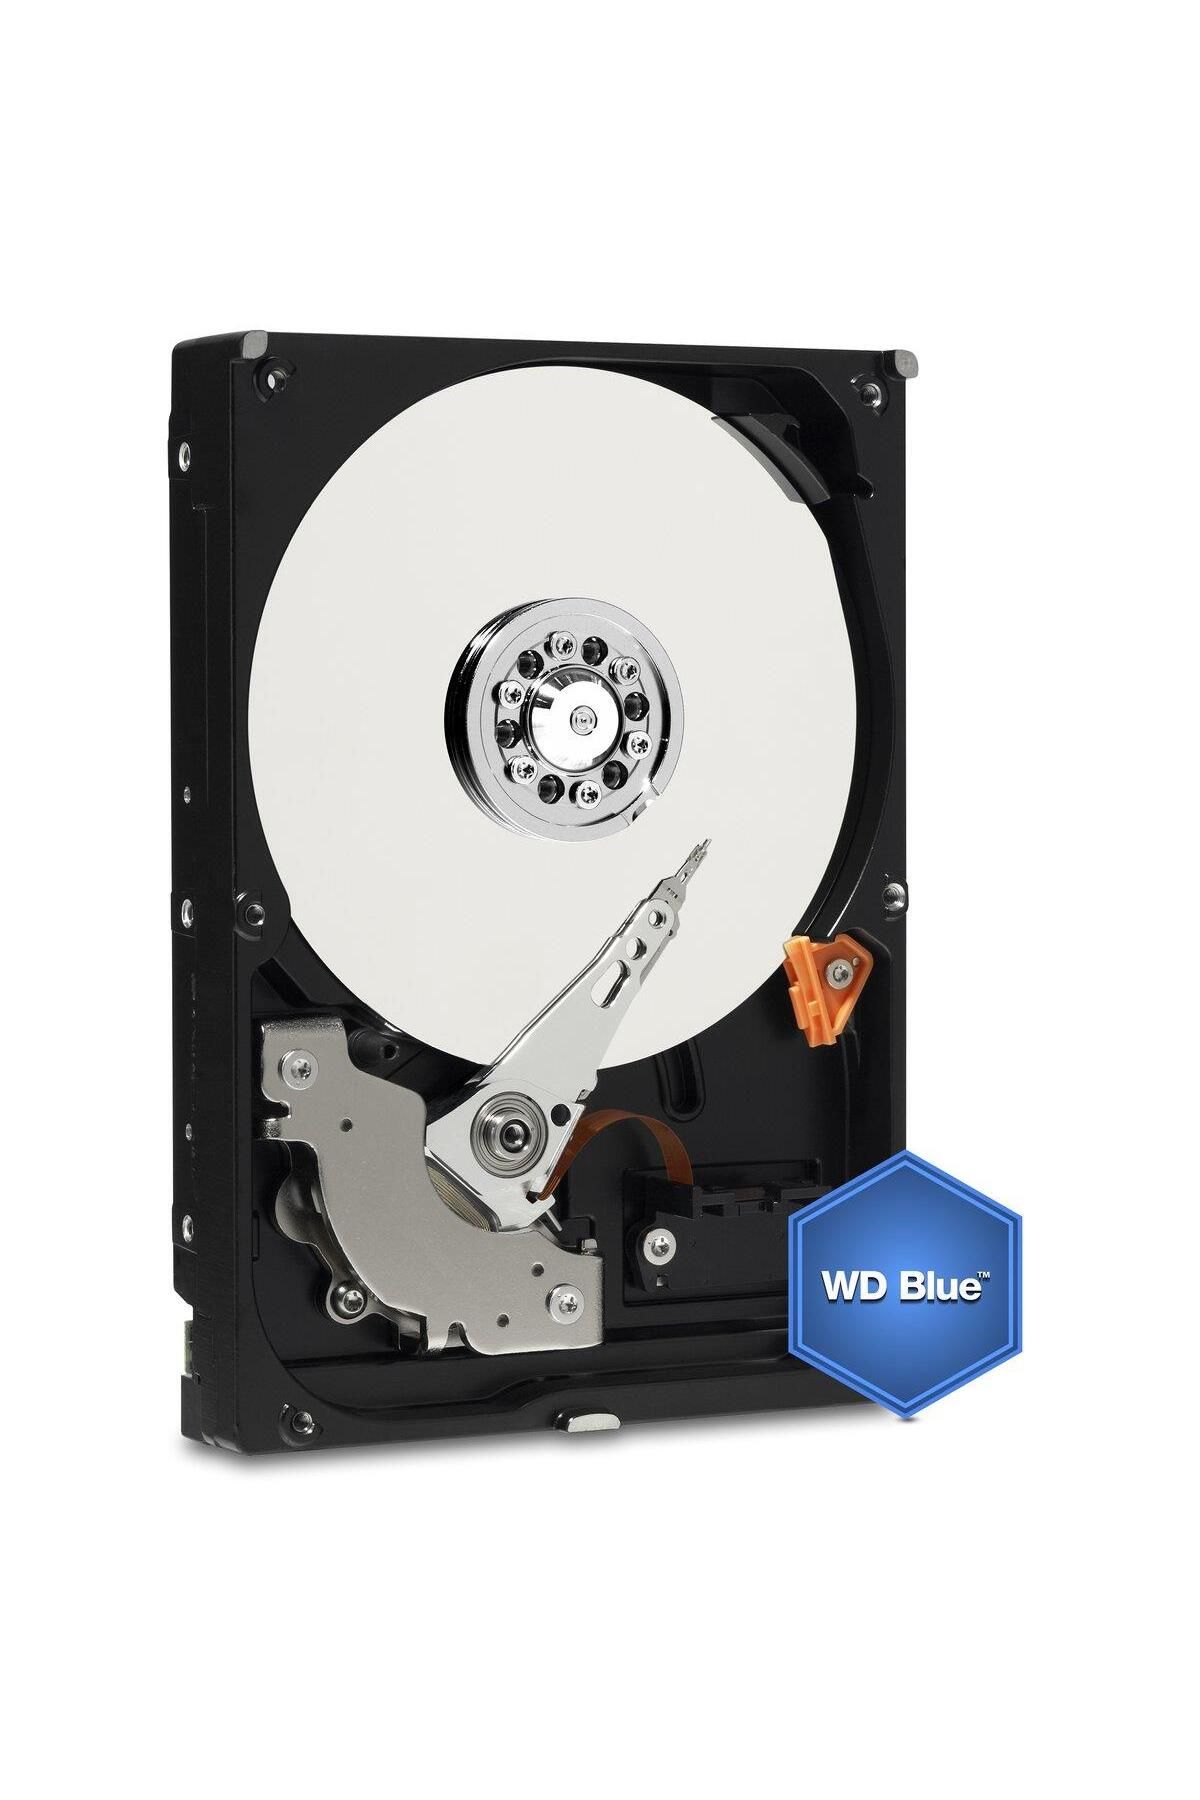 WD 2.5" 500 Gb Blue Wd5000lpcx Sata 3.0 5400 Rpm Hard Disk